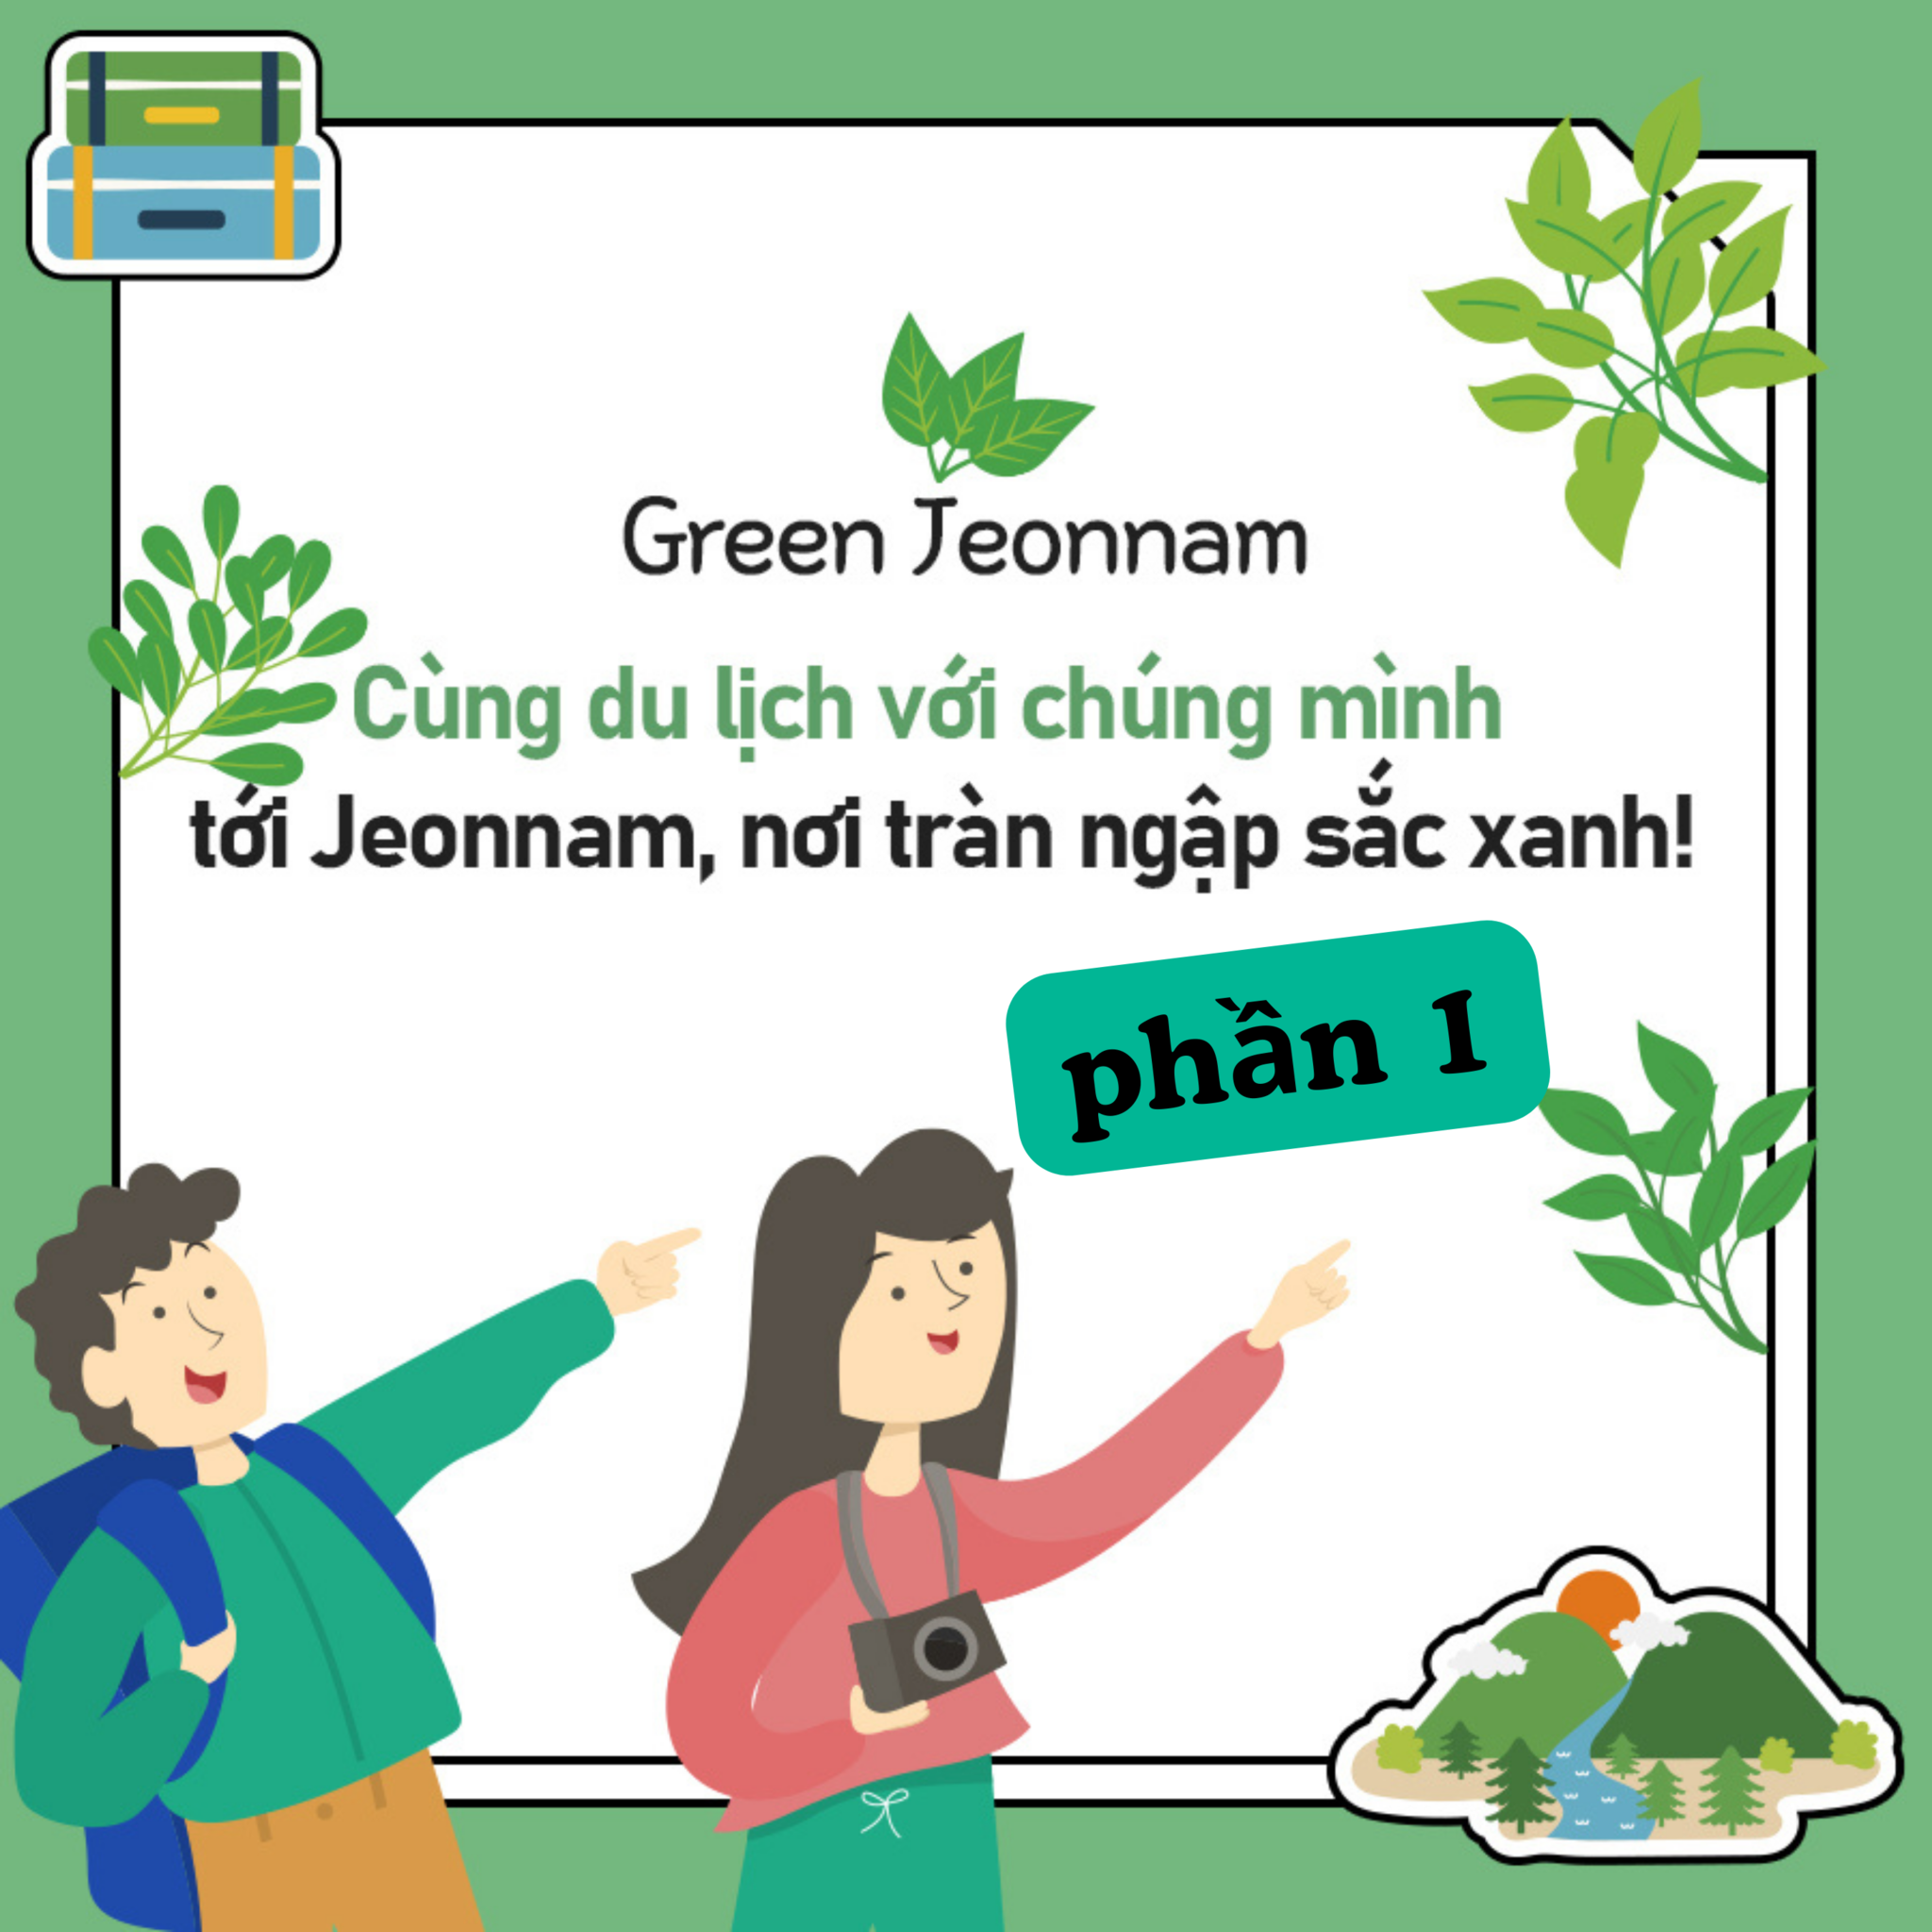 Green Jeonnam- Rừng tre xanh mát, Khu du lịch nghỉ dưỡng Juknokwon (Trúc Lục Viên)